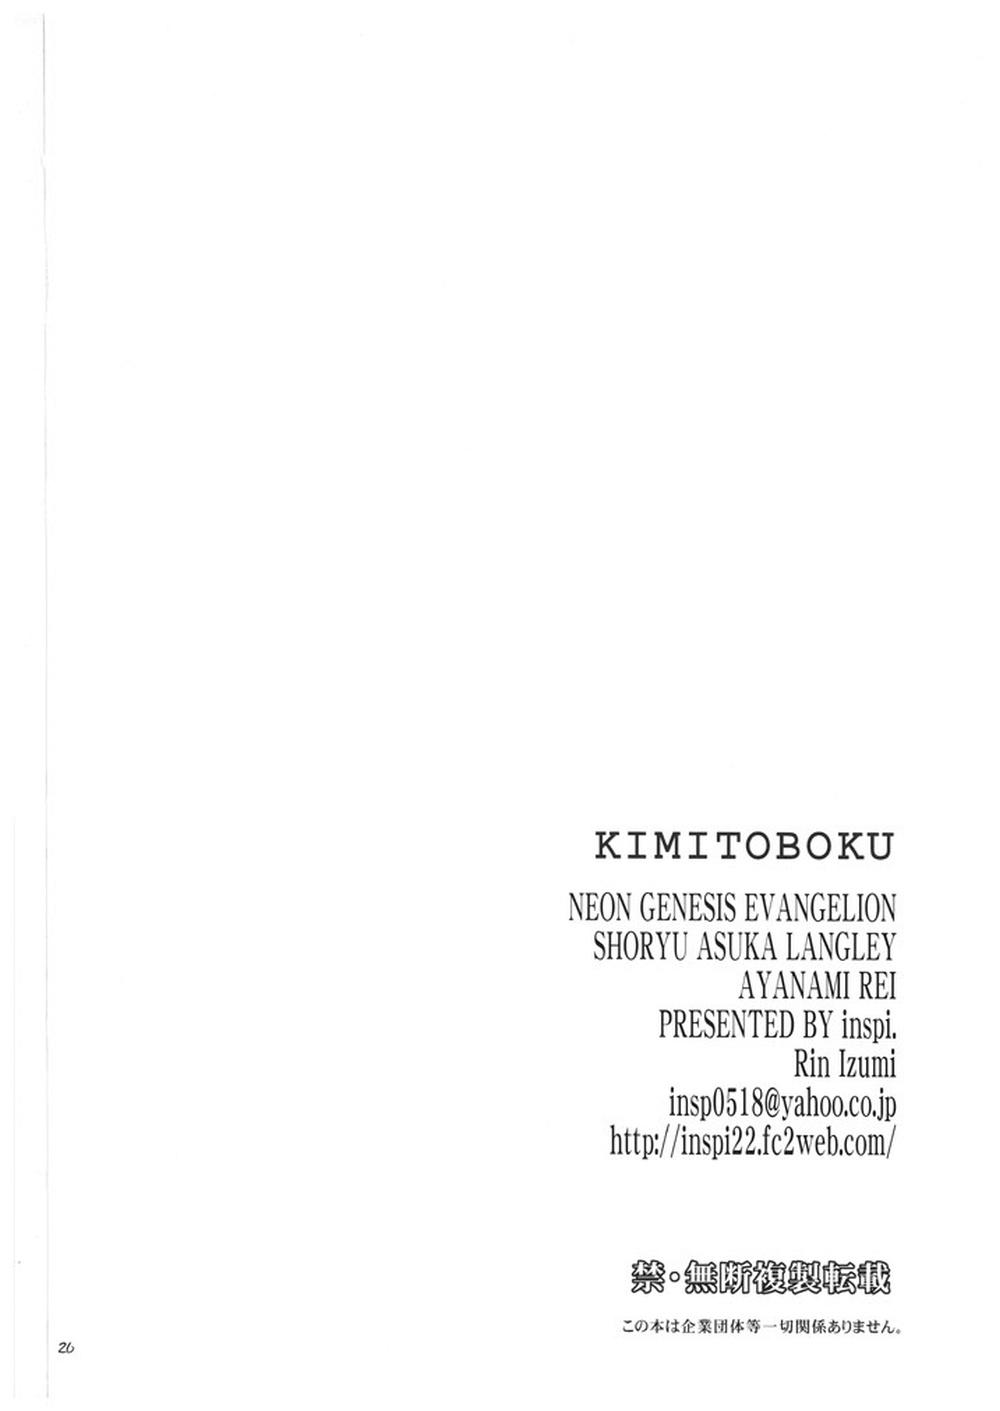 Small Boobs kimitoboku - Neon genesis evangelion Brasileiro - Page 25